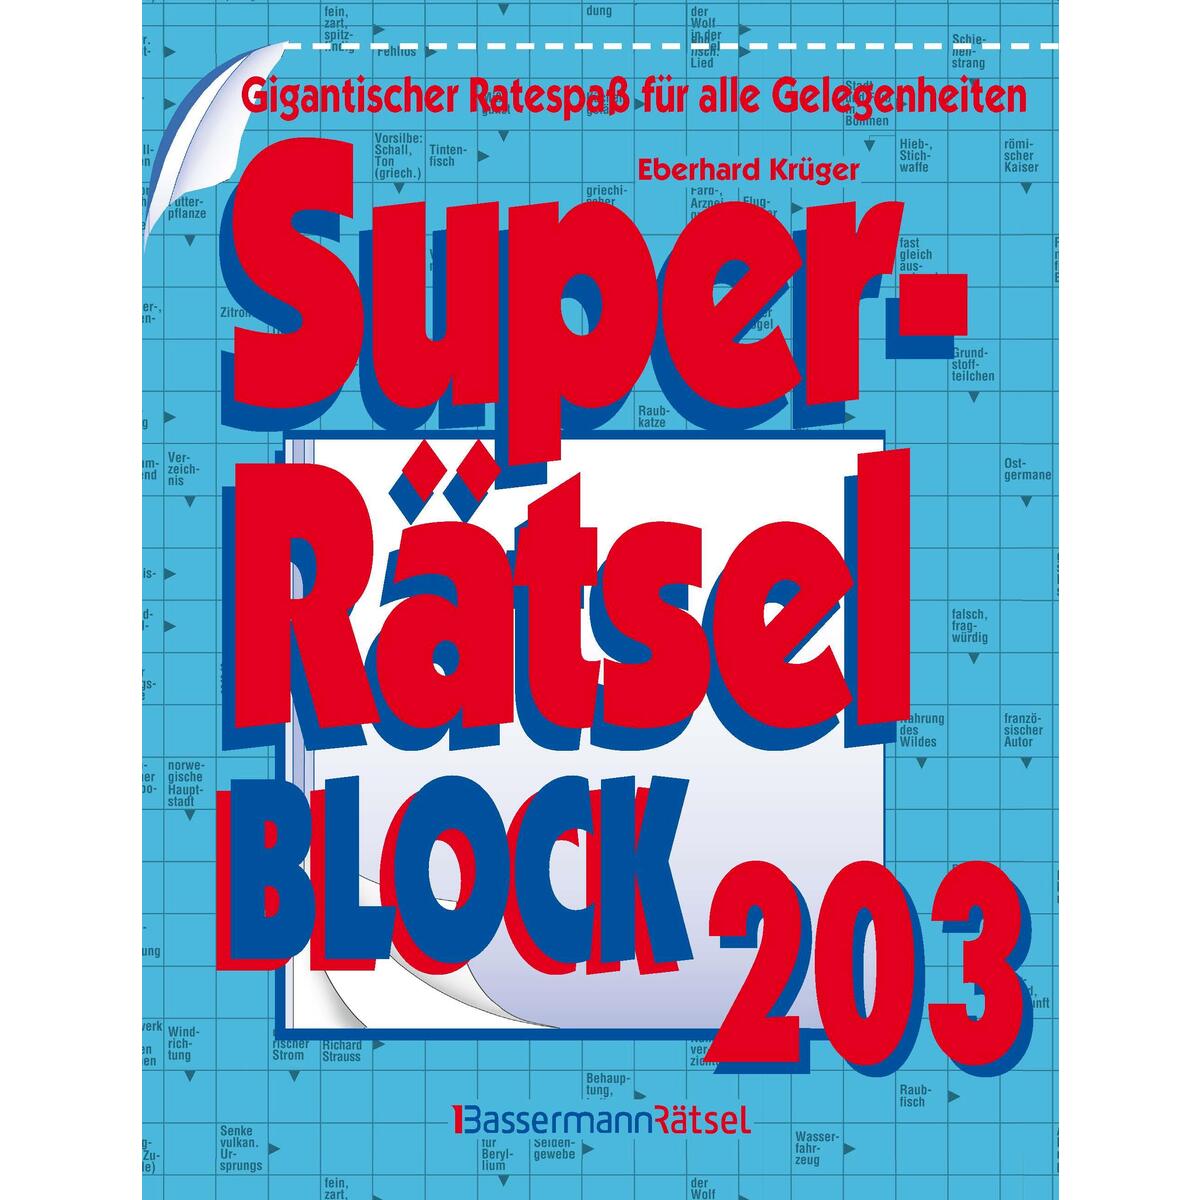 Superrätselblock 203 von Bassermann, Edition